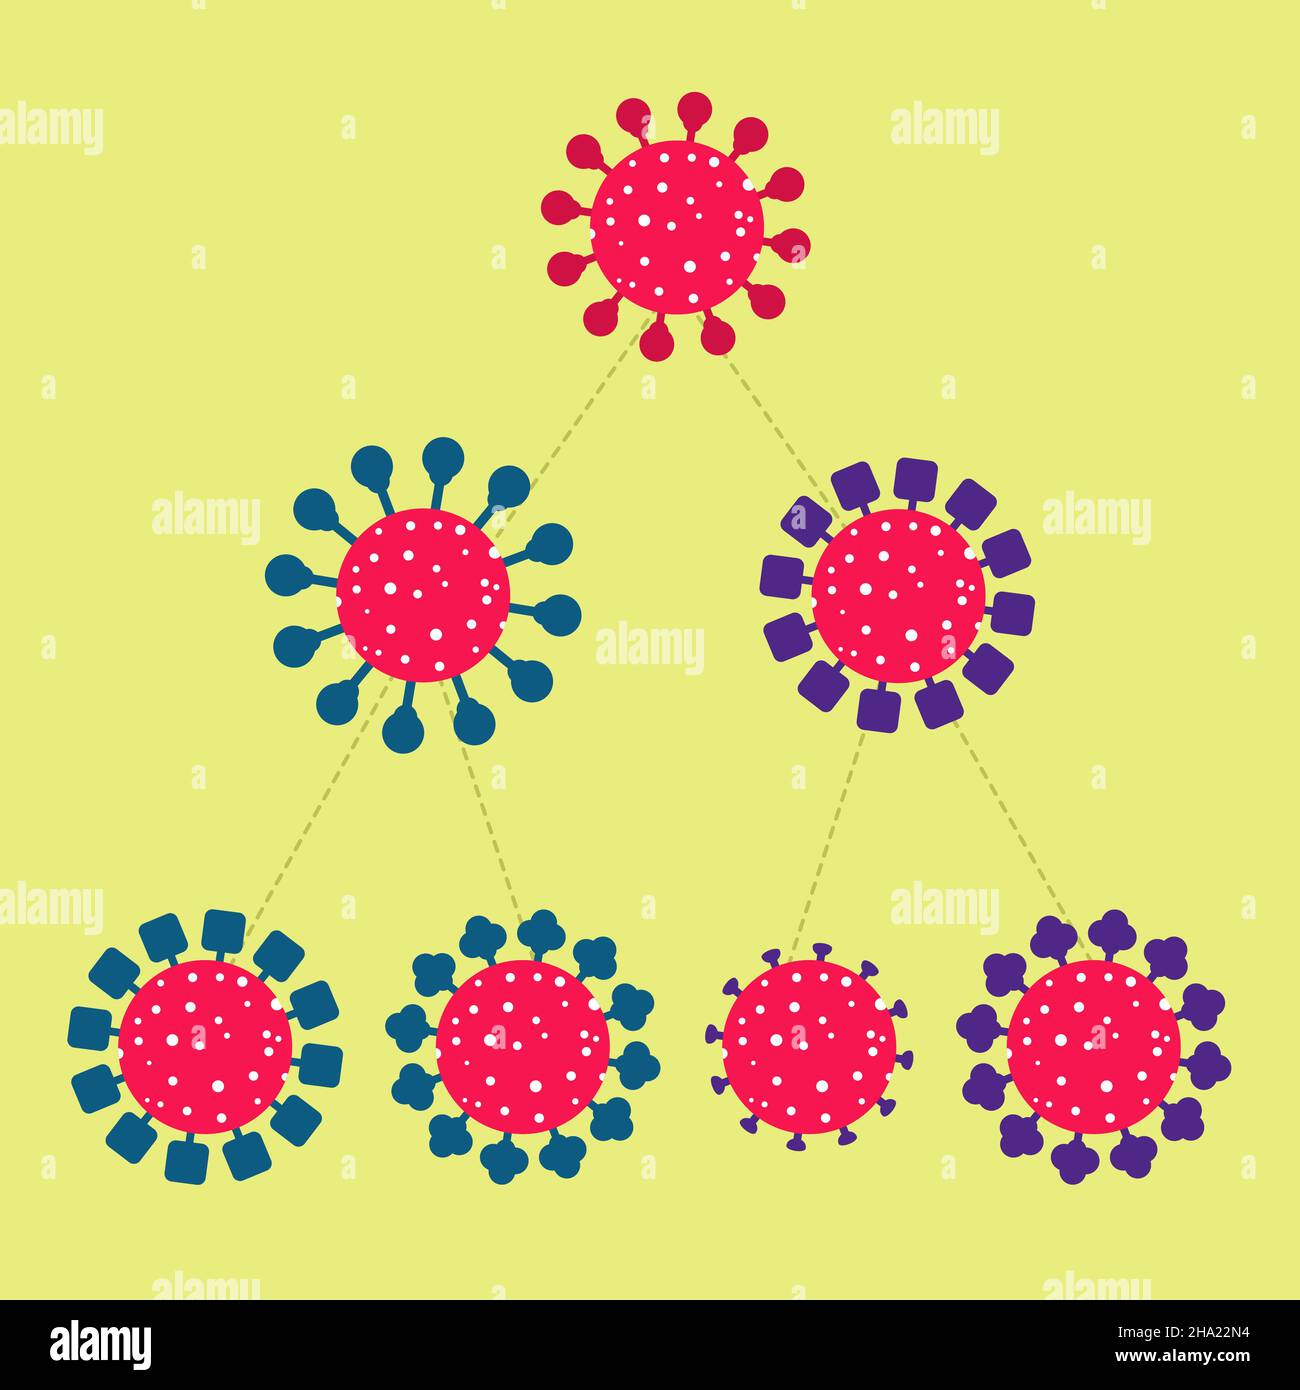 Virus que se reproduce y muta, produciendo variantes, otras versiones del virus original. Esquema y simplificación del proceso de mutación. Aislado. Ilustración del Vector